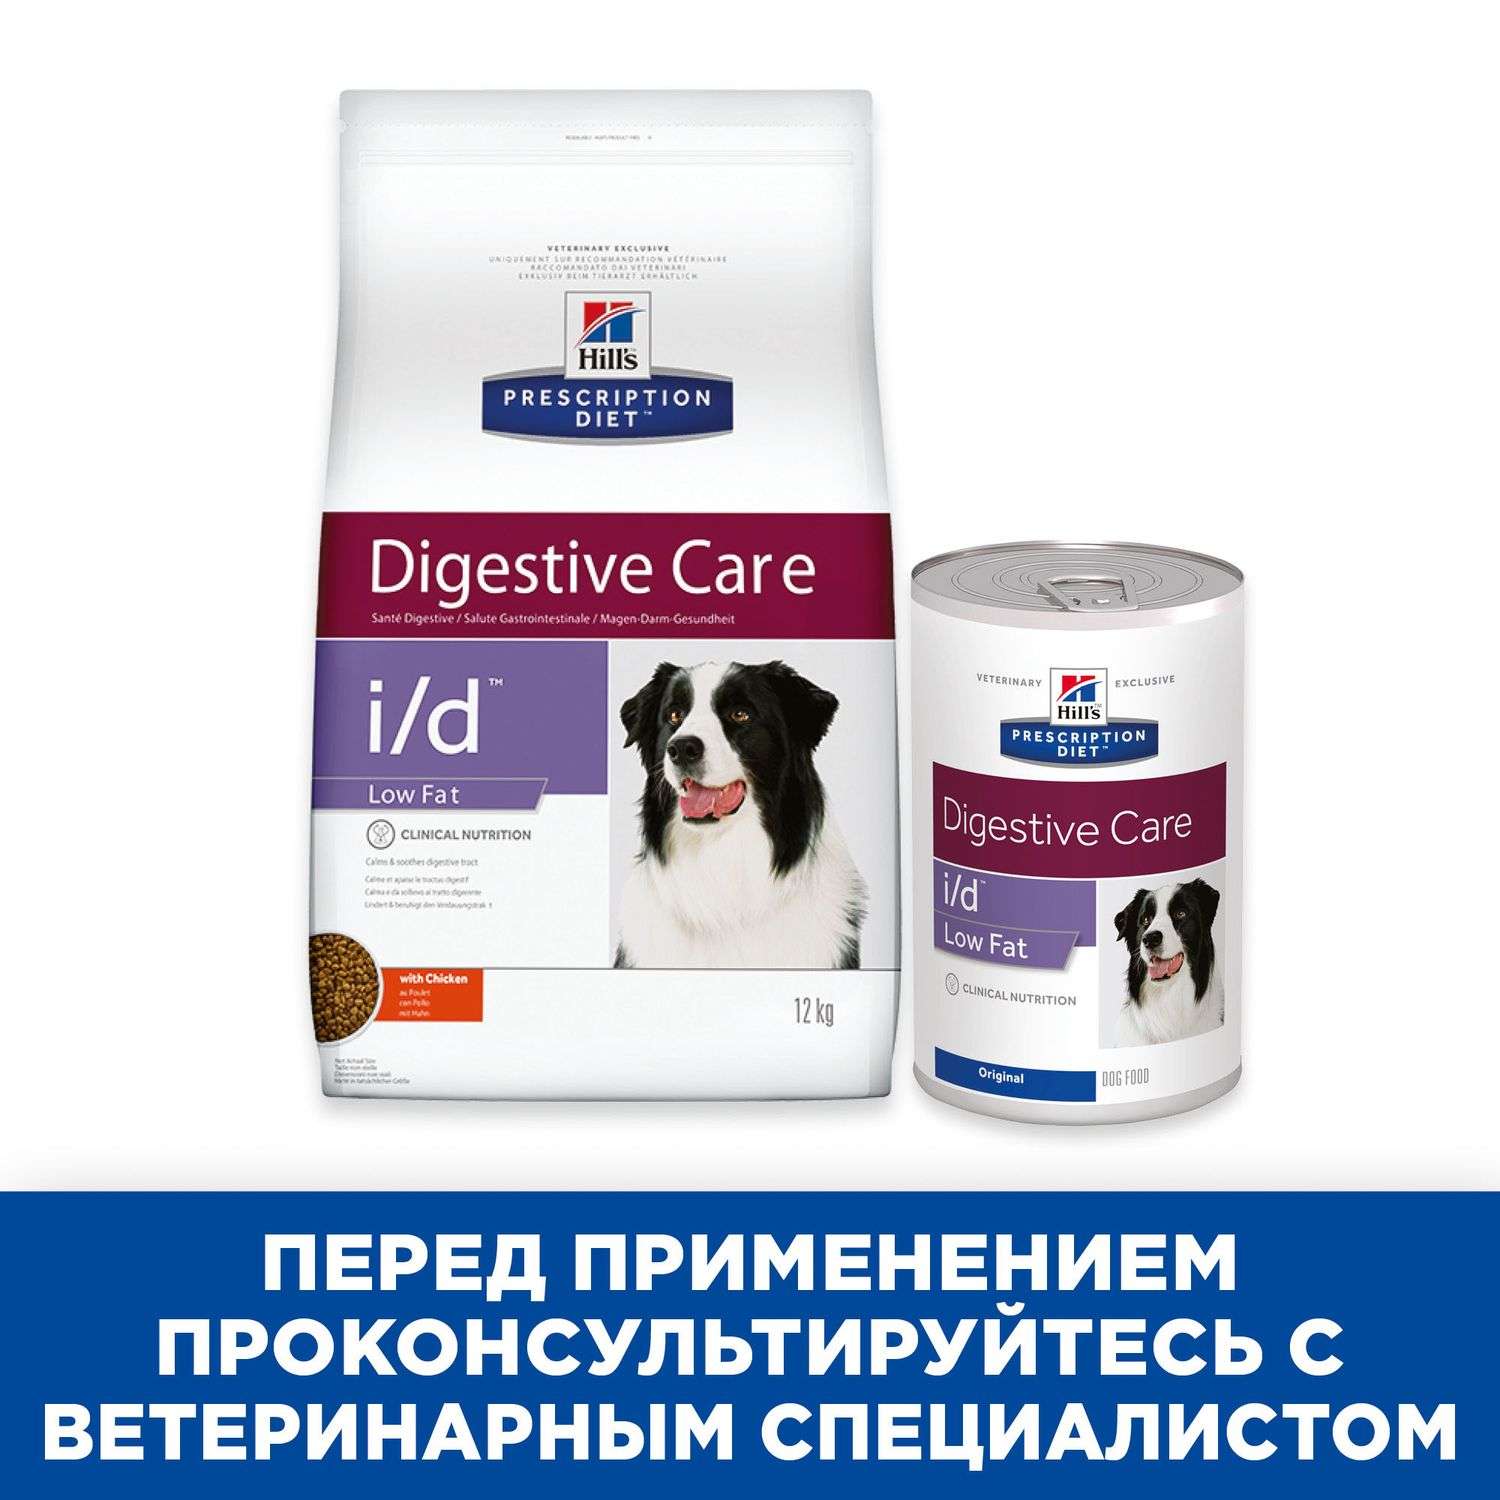 Корм для собак HILLS 360г Prescription Diet i/d LowFat DigestiveCare для ЖКТ и поджелудочной железы консервированный - фото 7